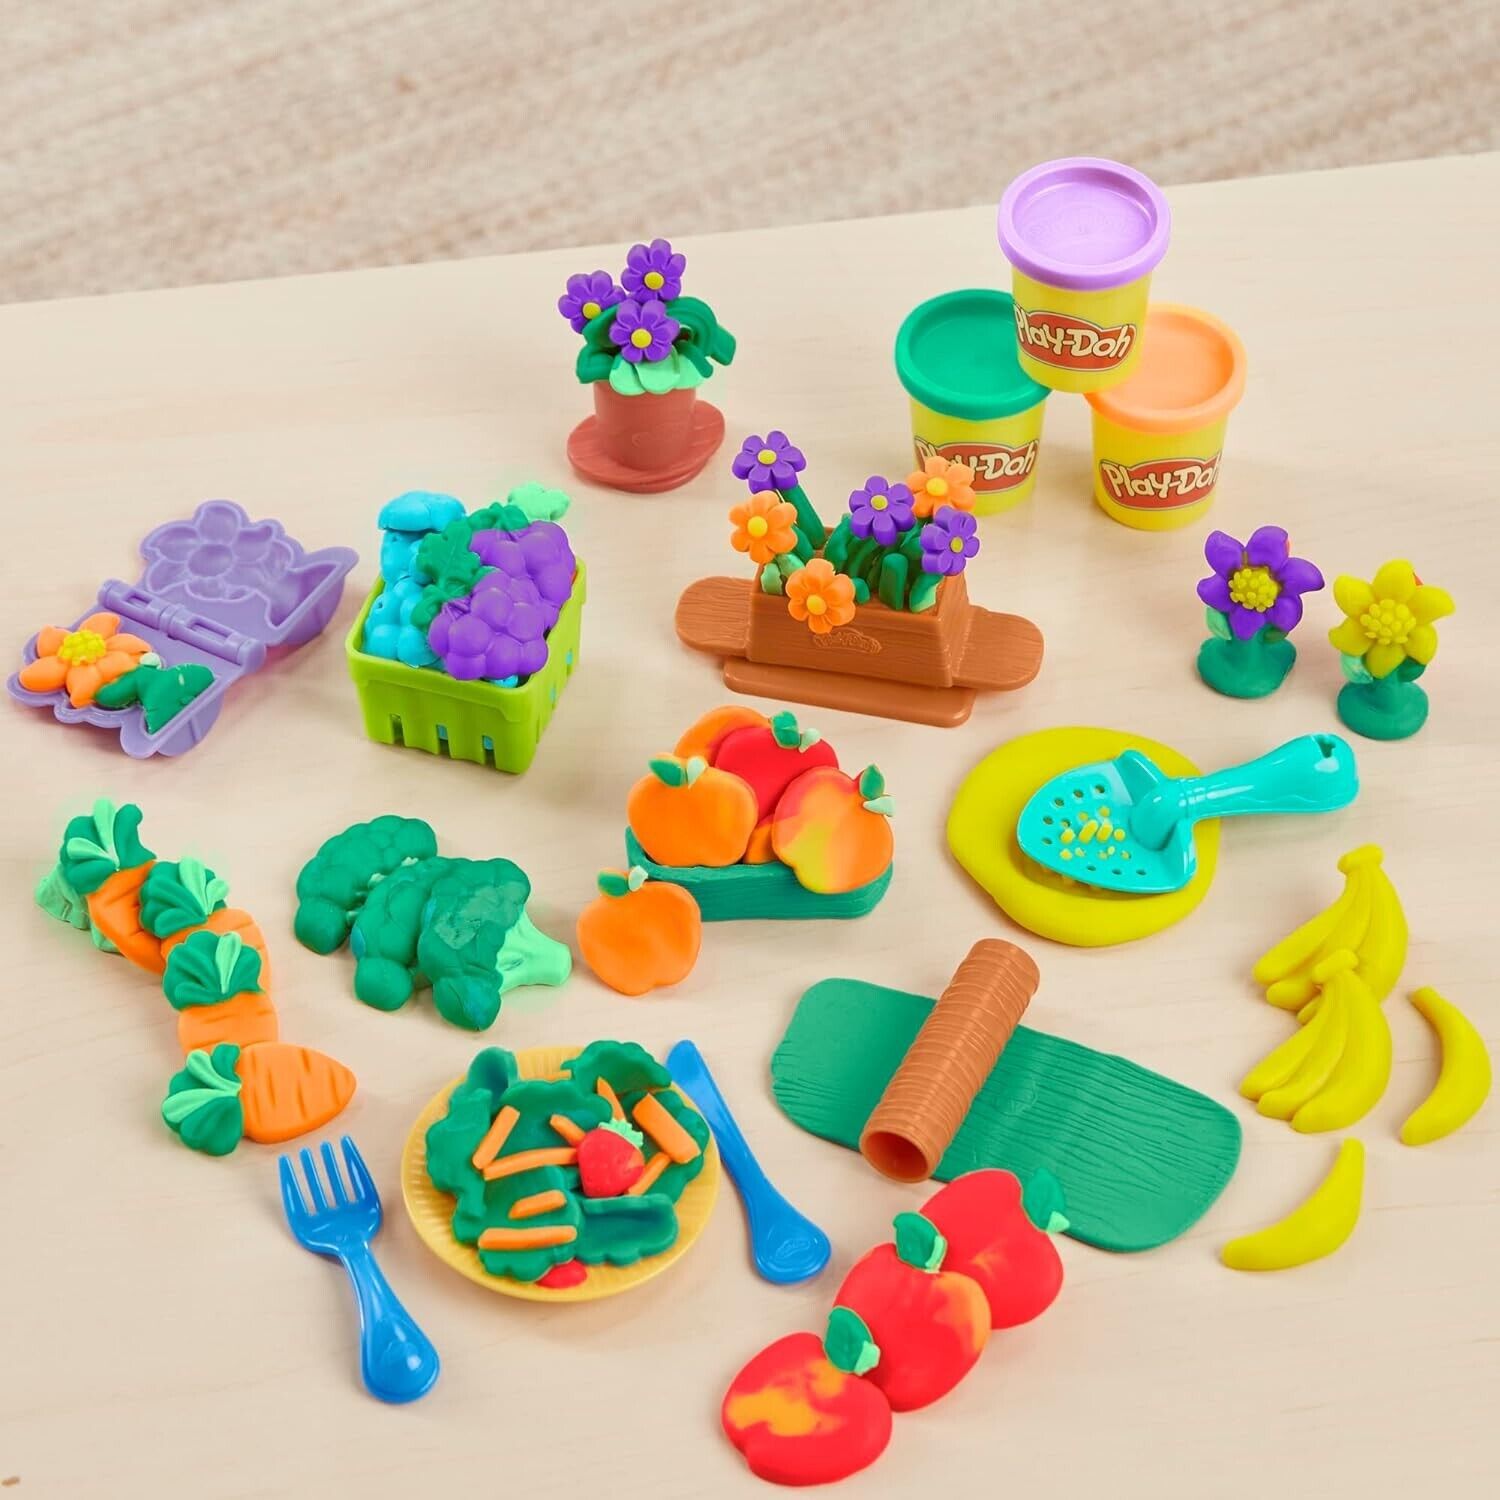 Play-Doh Grow Your Garden Kids Toys Toolset